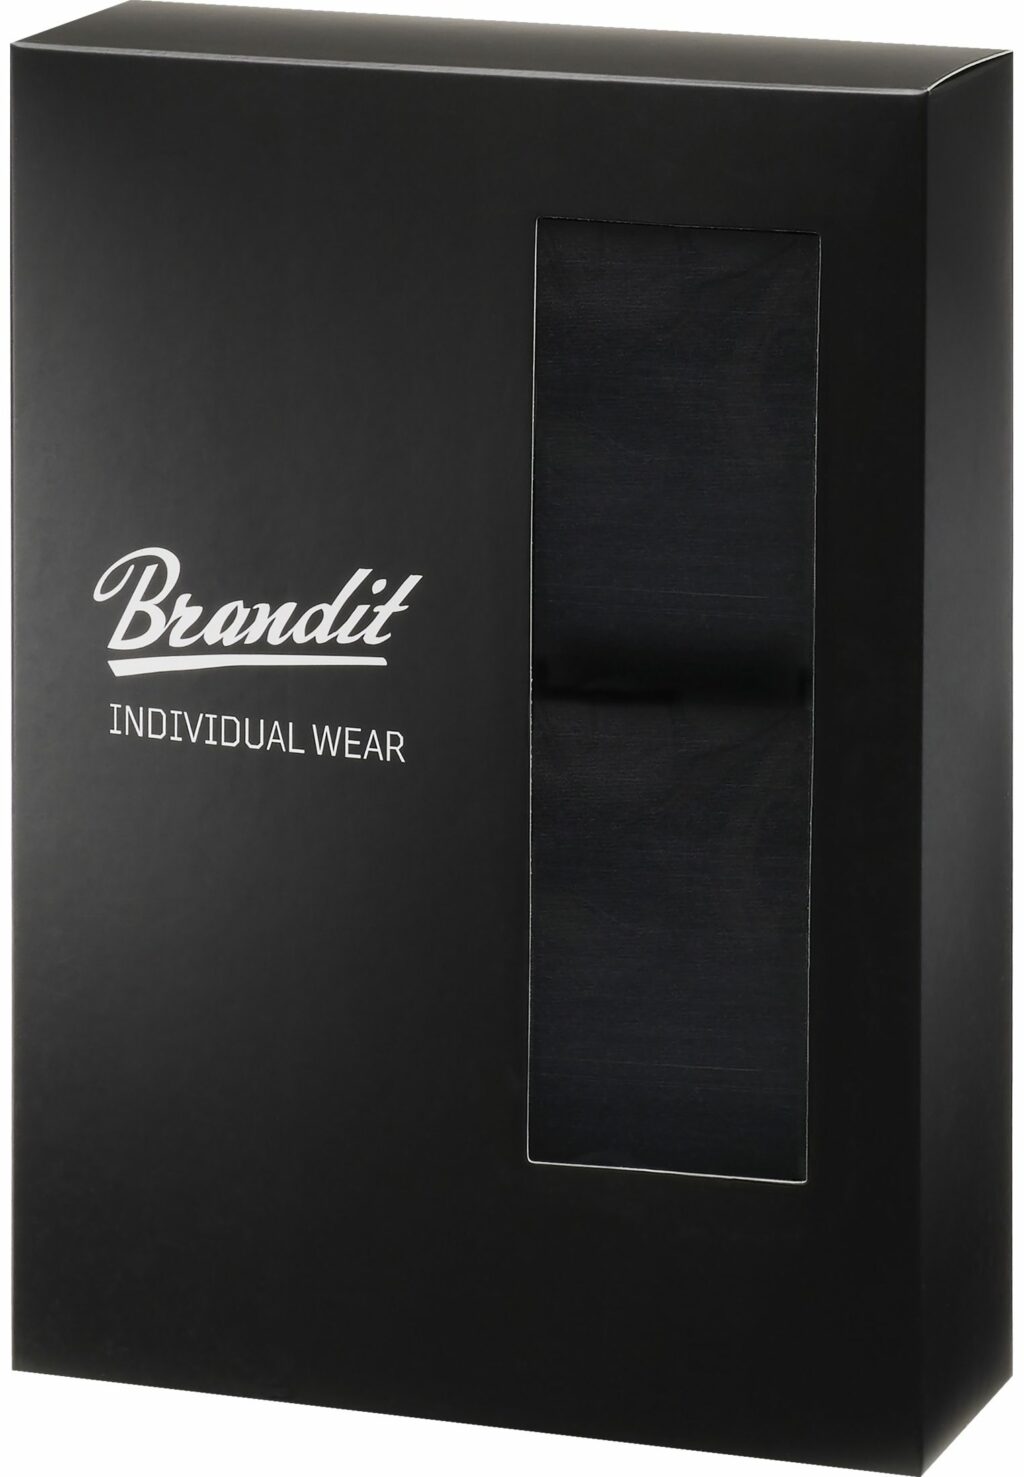 Brandit Boxershorts Logo 2-Pack black/black BD4501